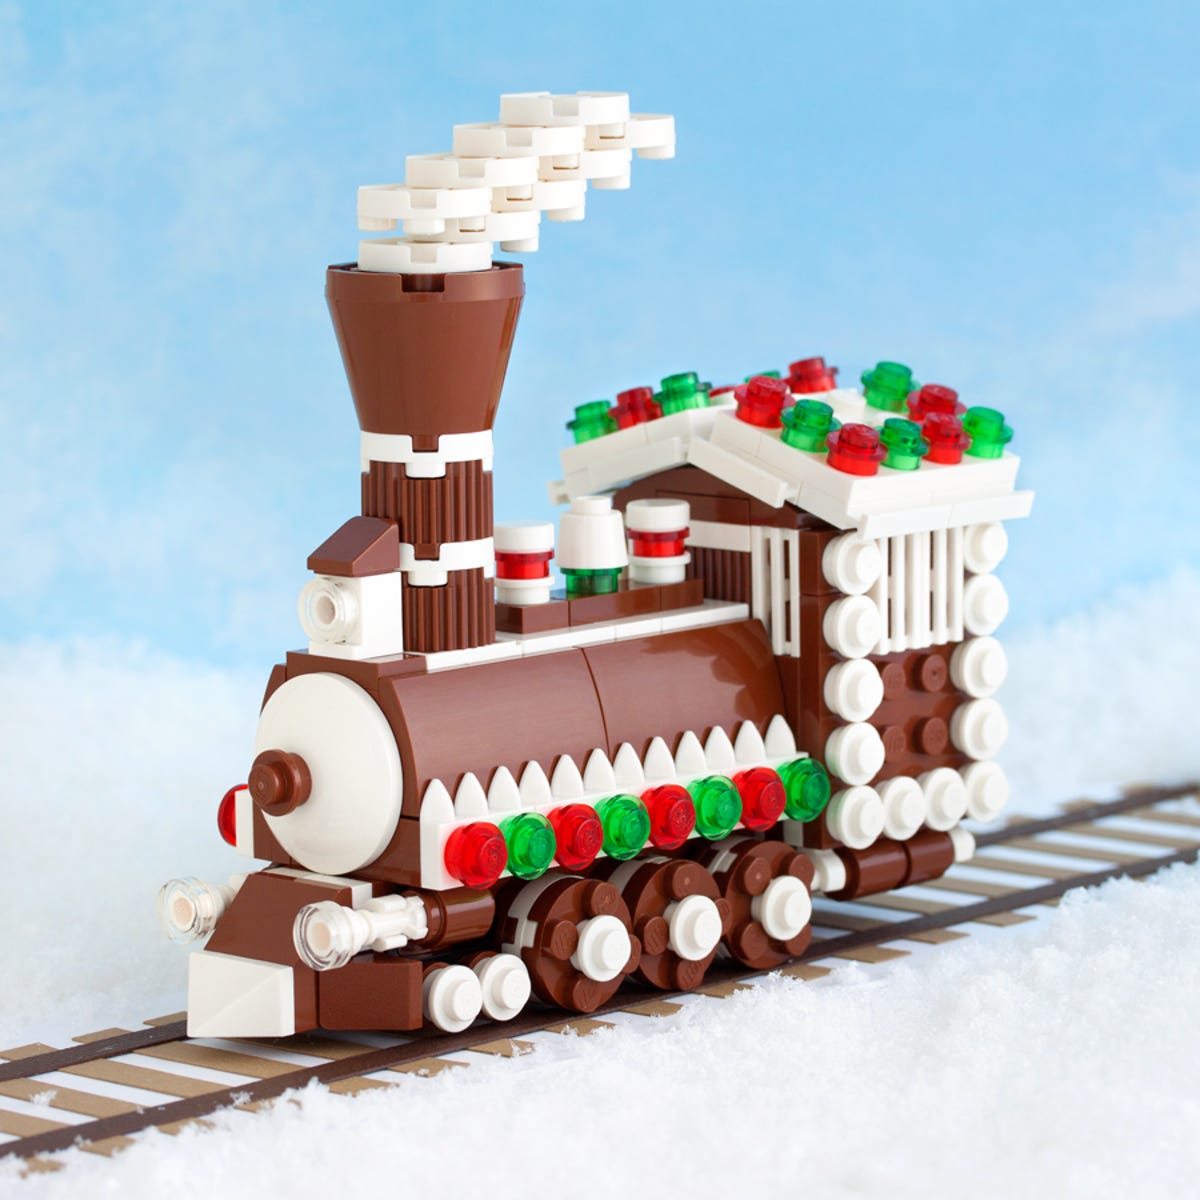 1-gingerbread-lego-ornament.jpg